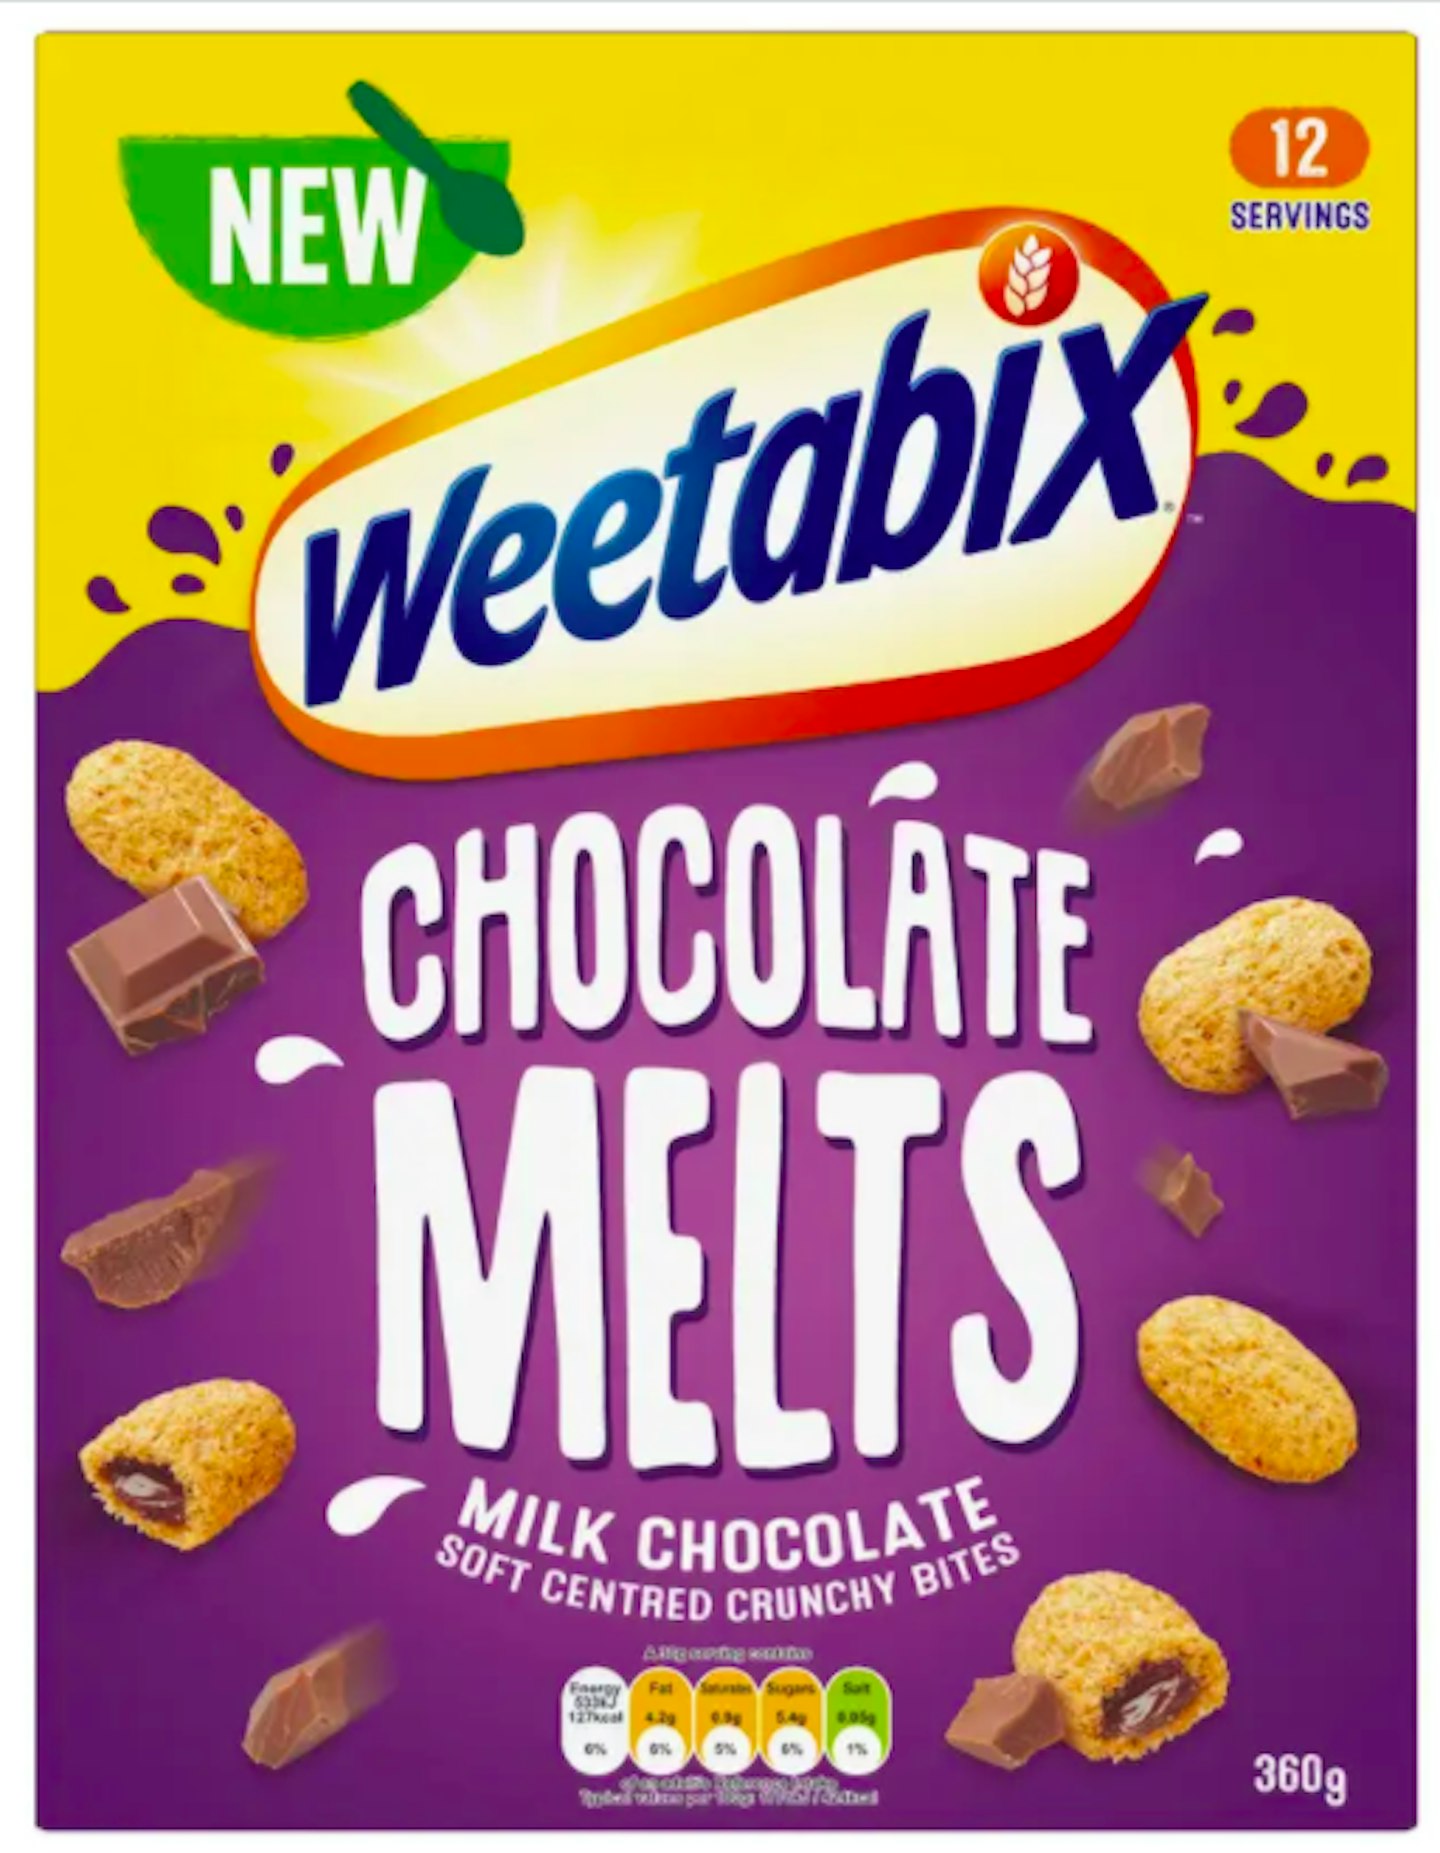 Weetabix Chocolate Melts